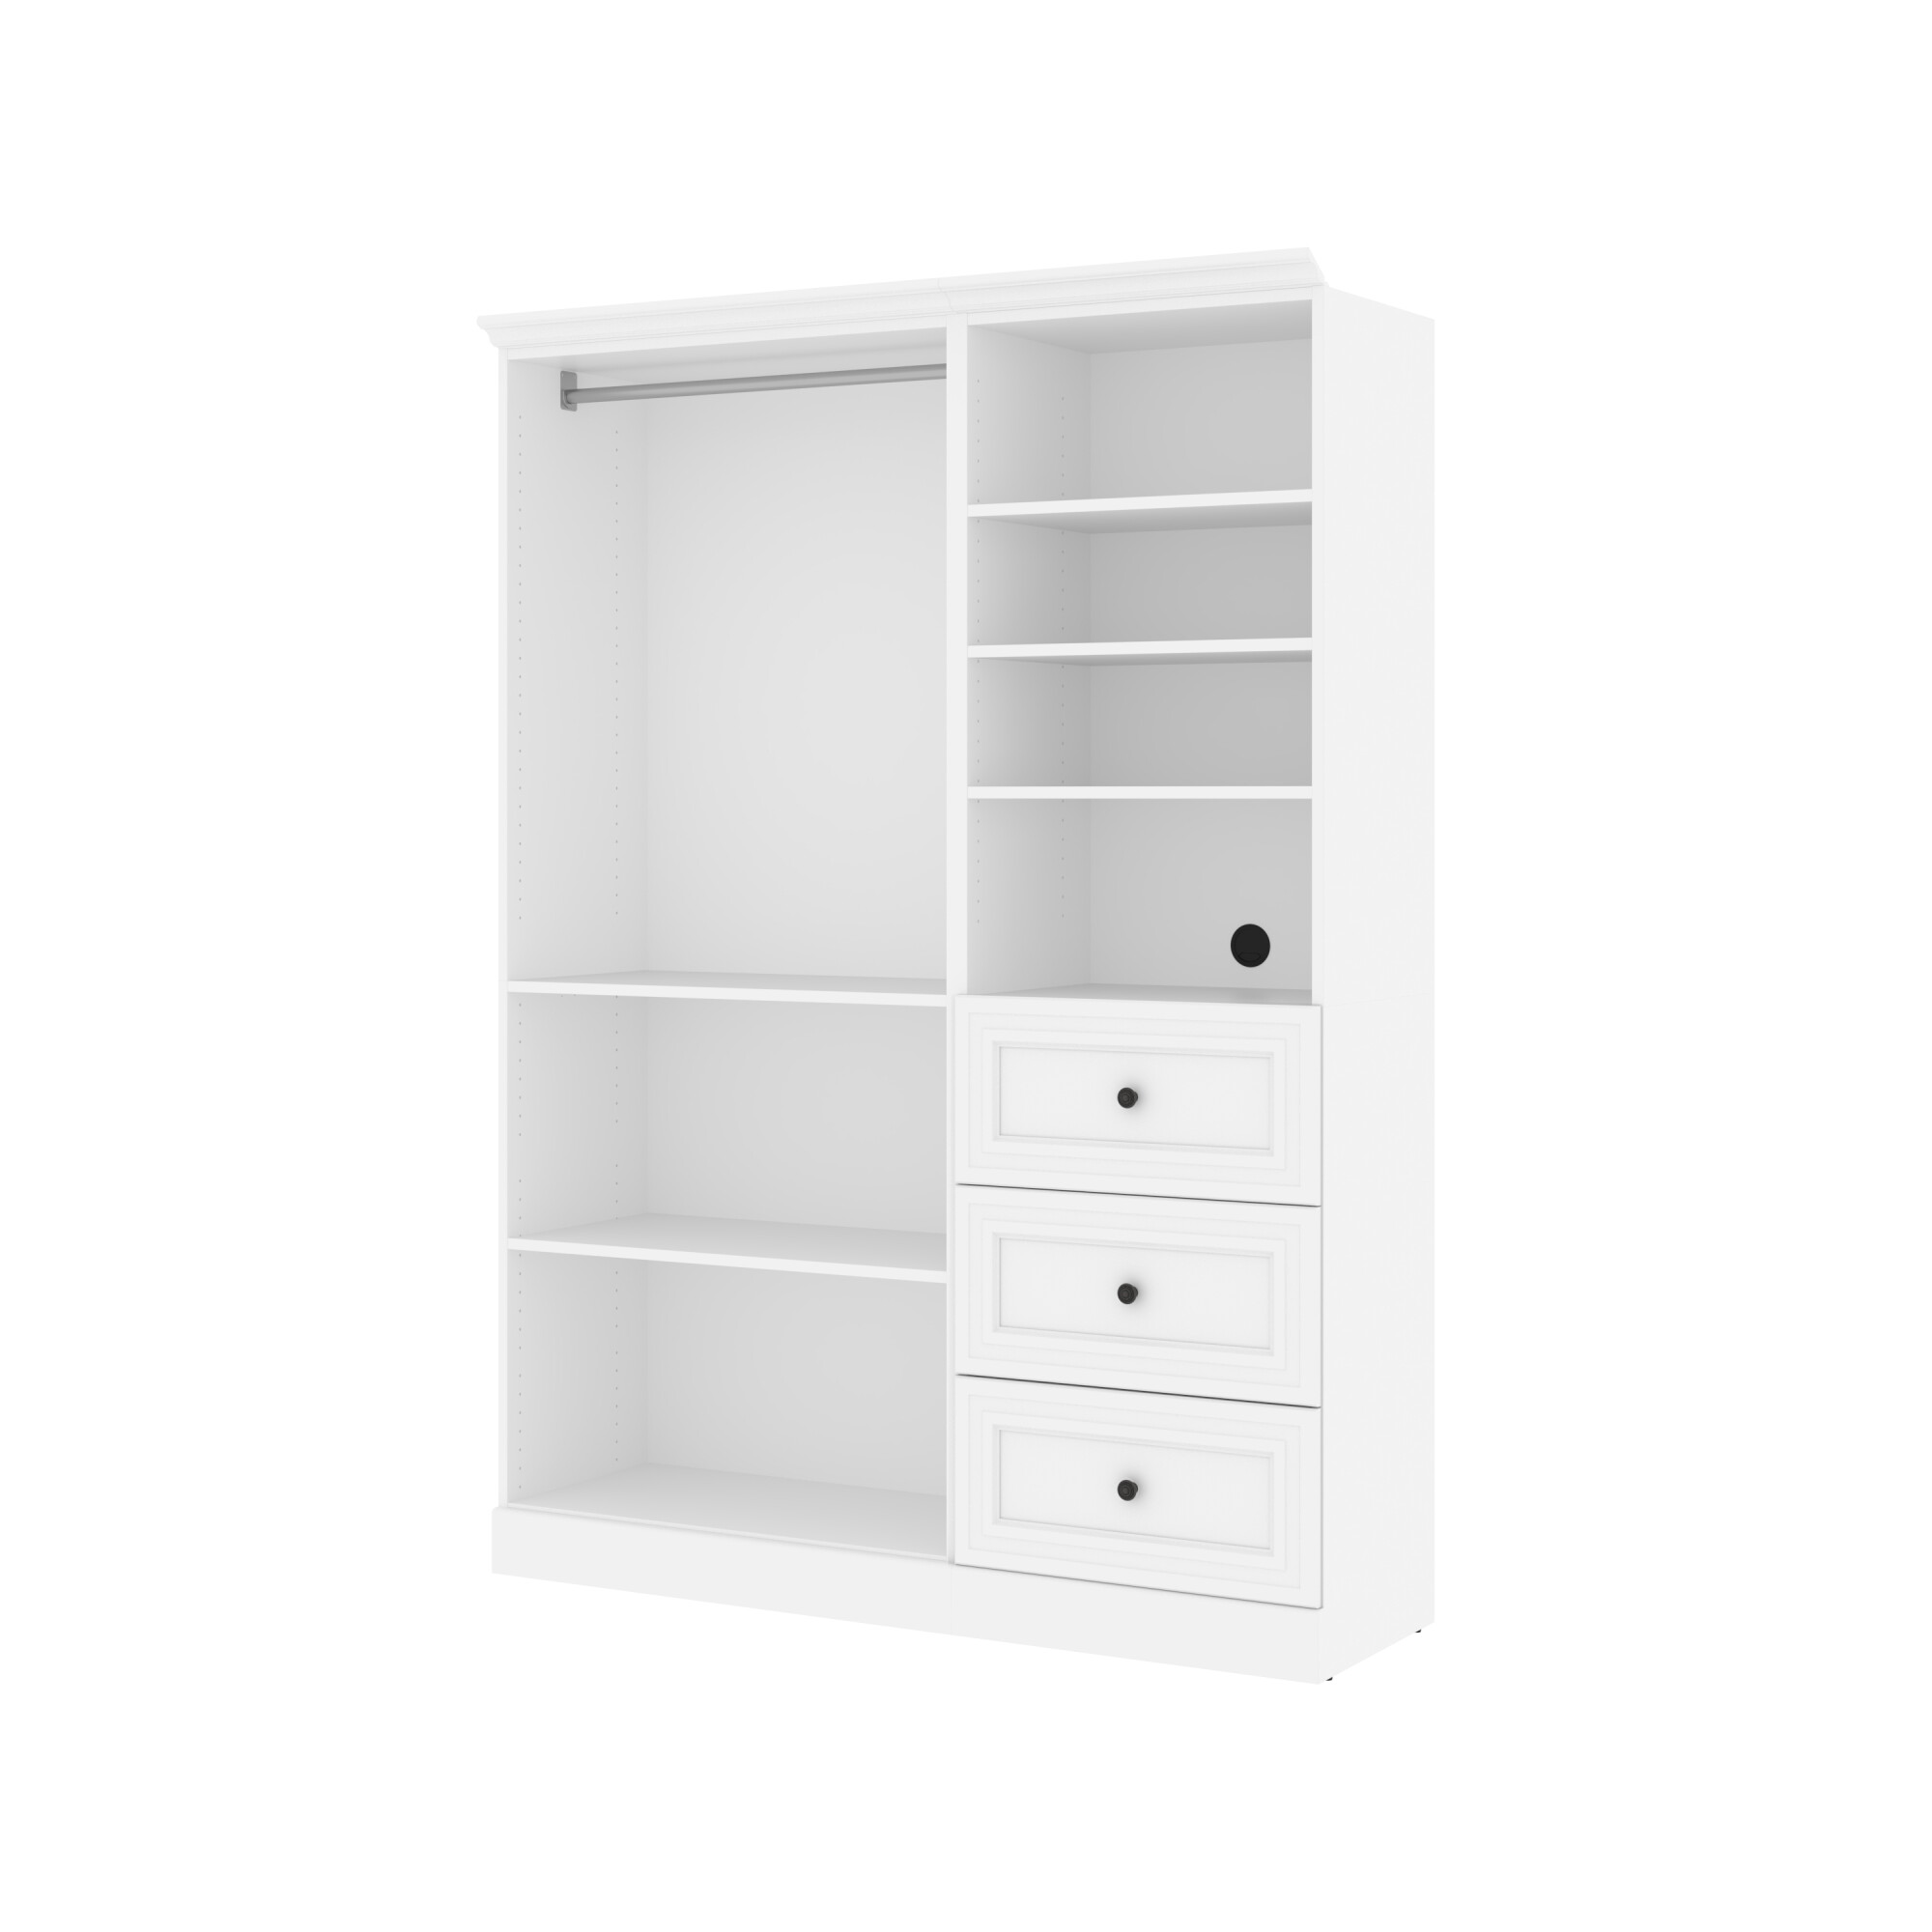 https://www.homethreads.com/files/bestar/40870-17-bestar-versatile-61r-closet-organizer-with-drawers-in-white-1.jpg